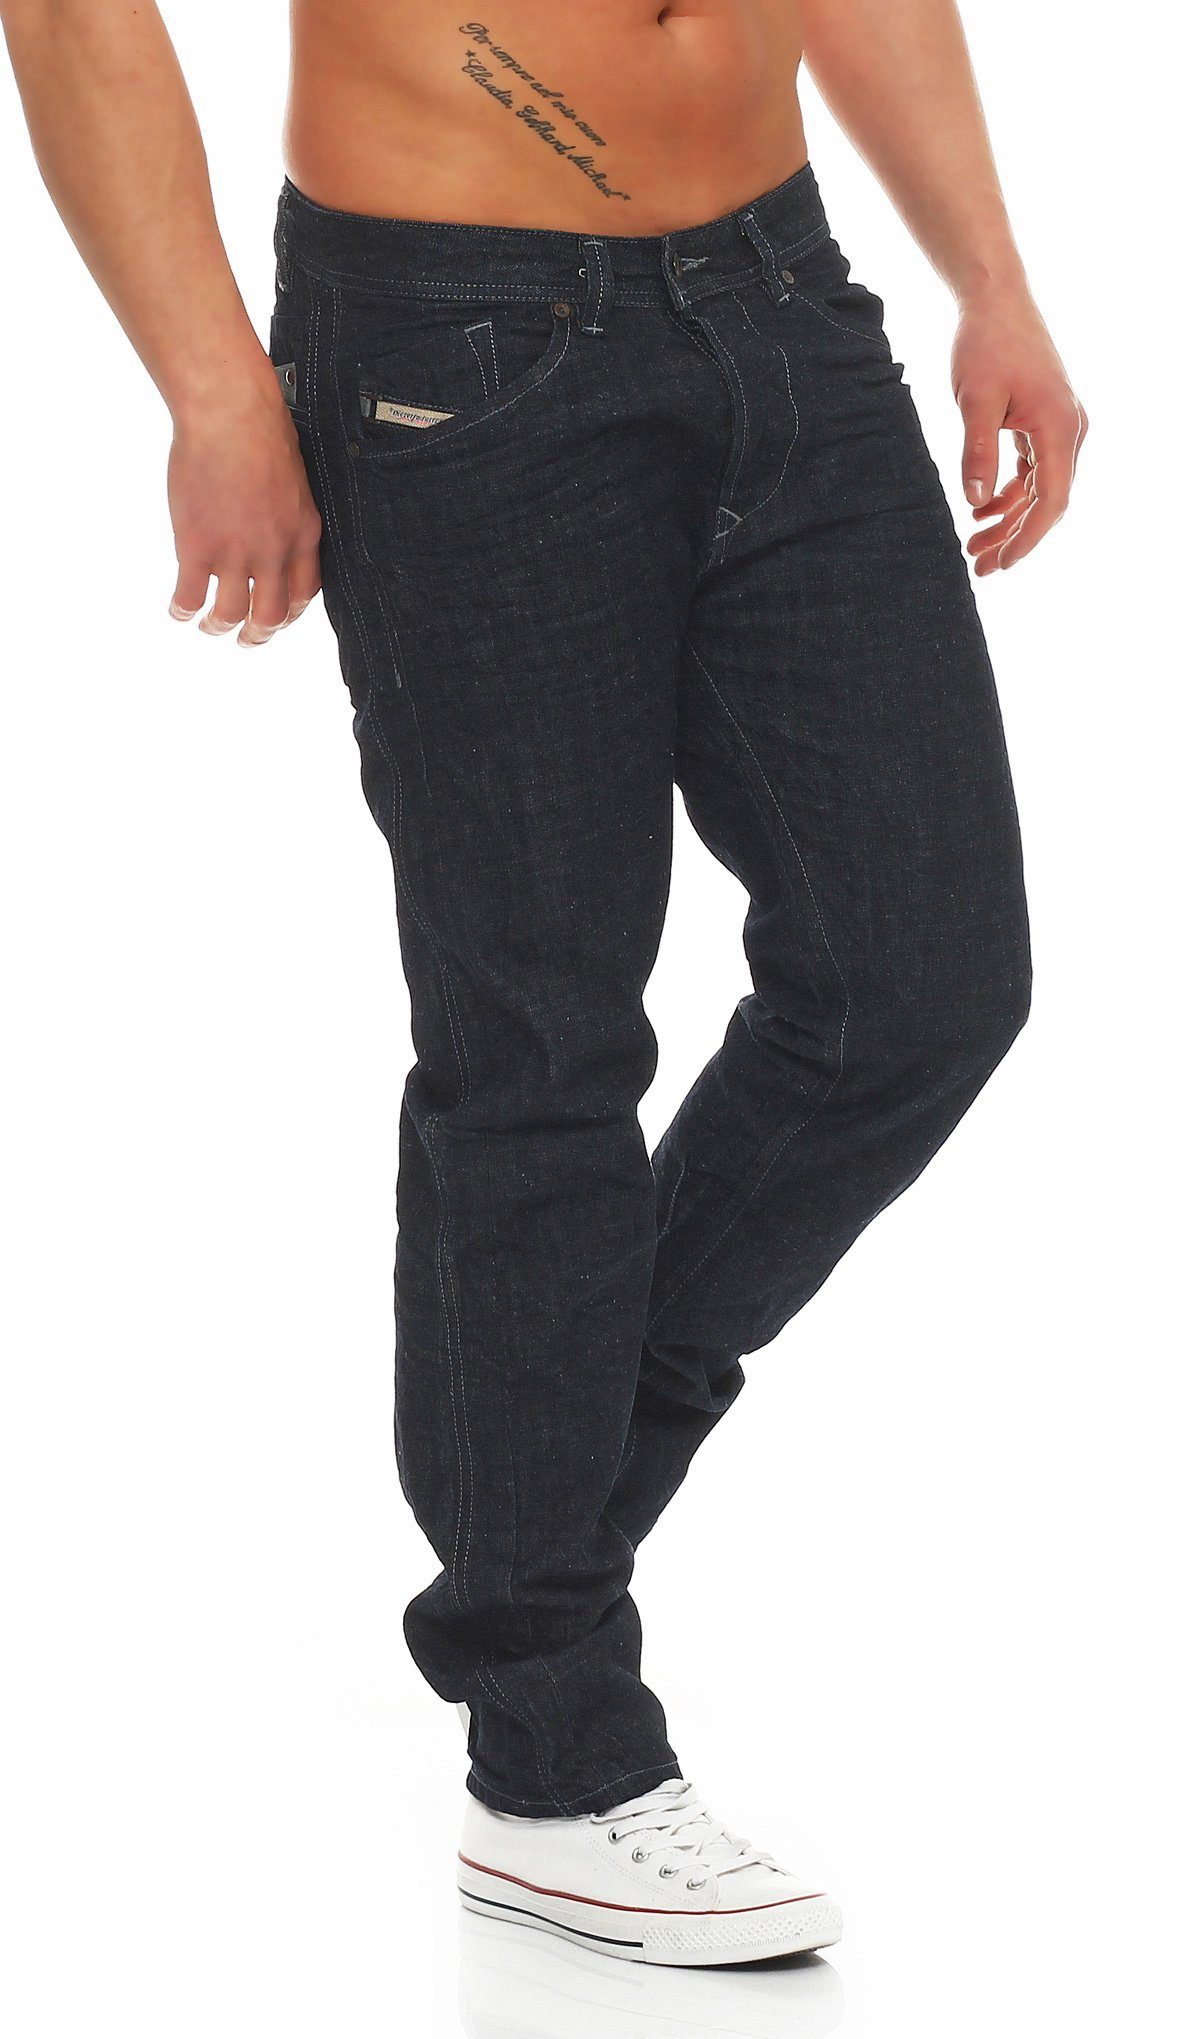 Darron Diesel W28 Style, Größe: L32 Blau, 0R07R Regular-fit-Jeans Herren 5 Pocket